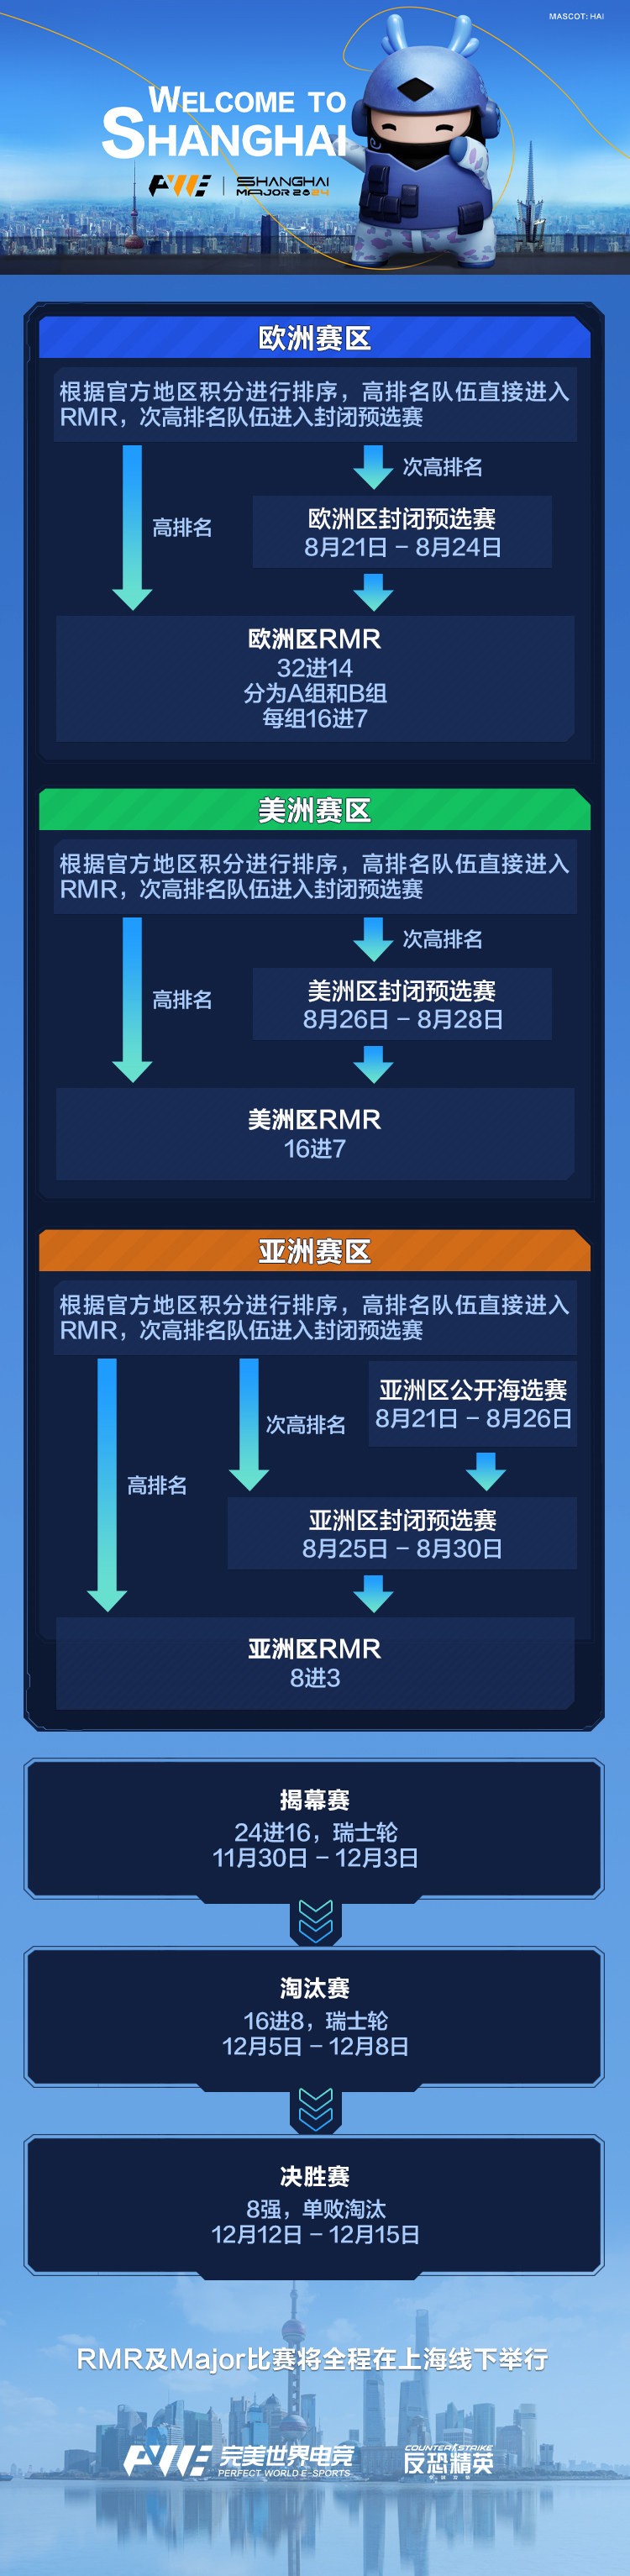 完美世界公佈CS2年底上海Major新消息